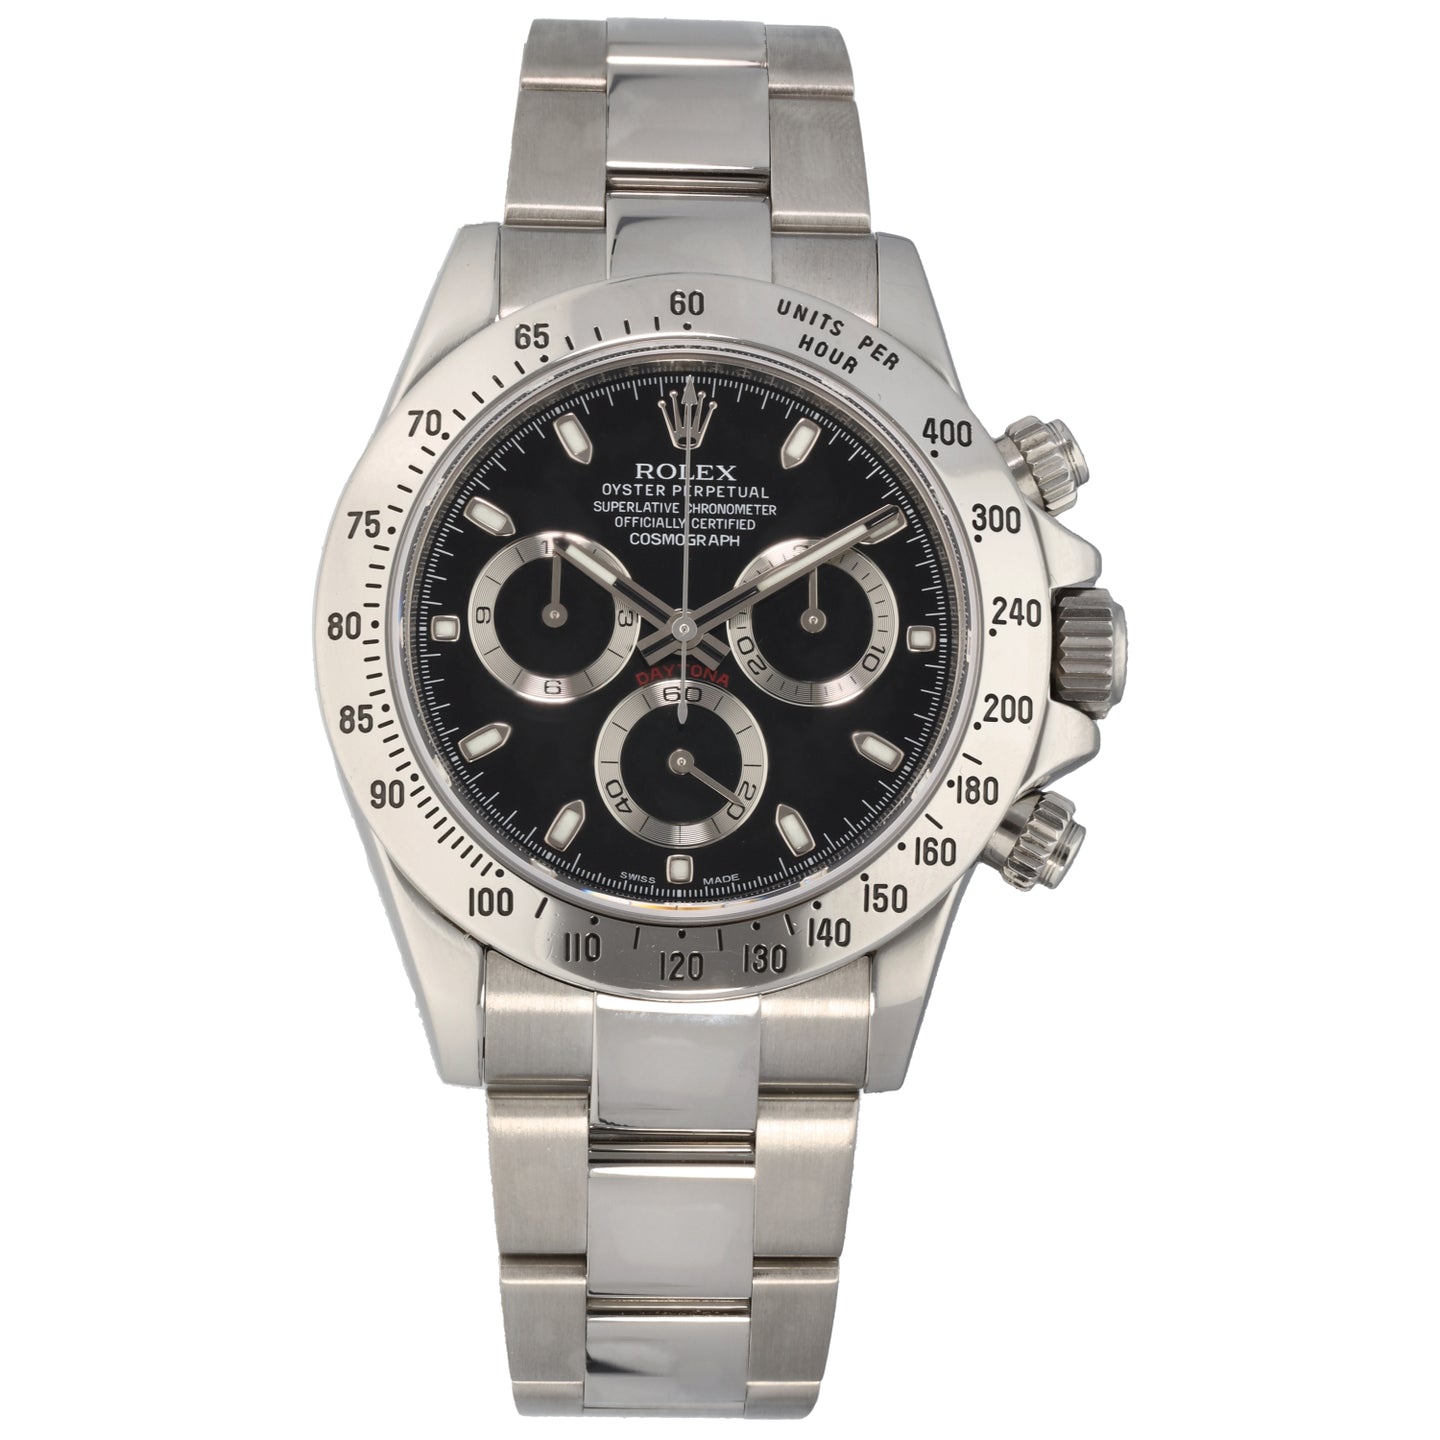 Rolex Daytona 116520 40mm Stainless Steel Watch